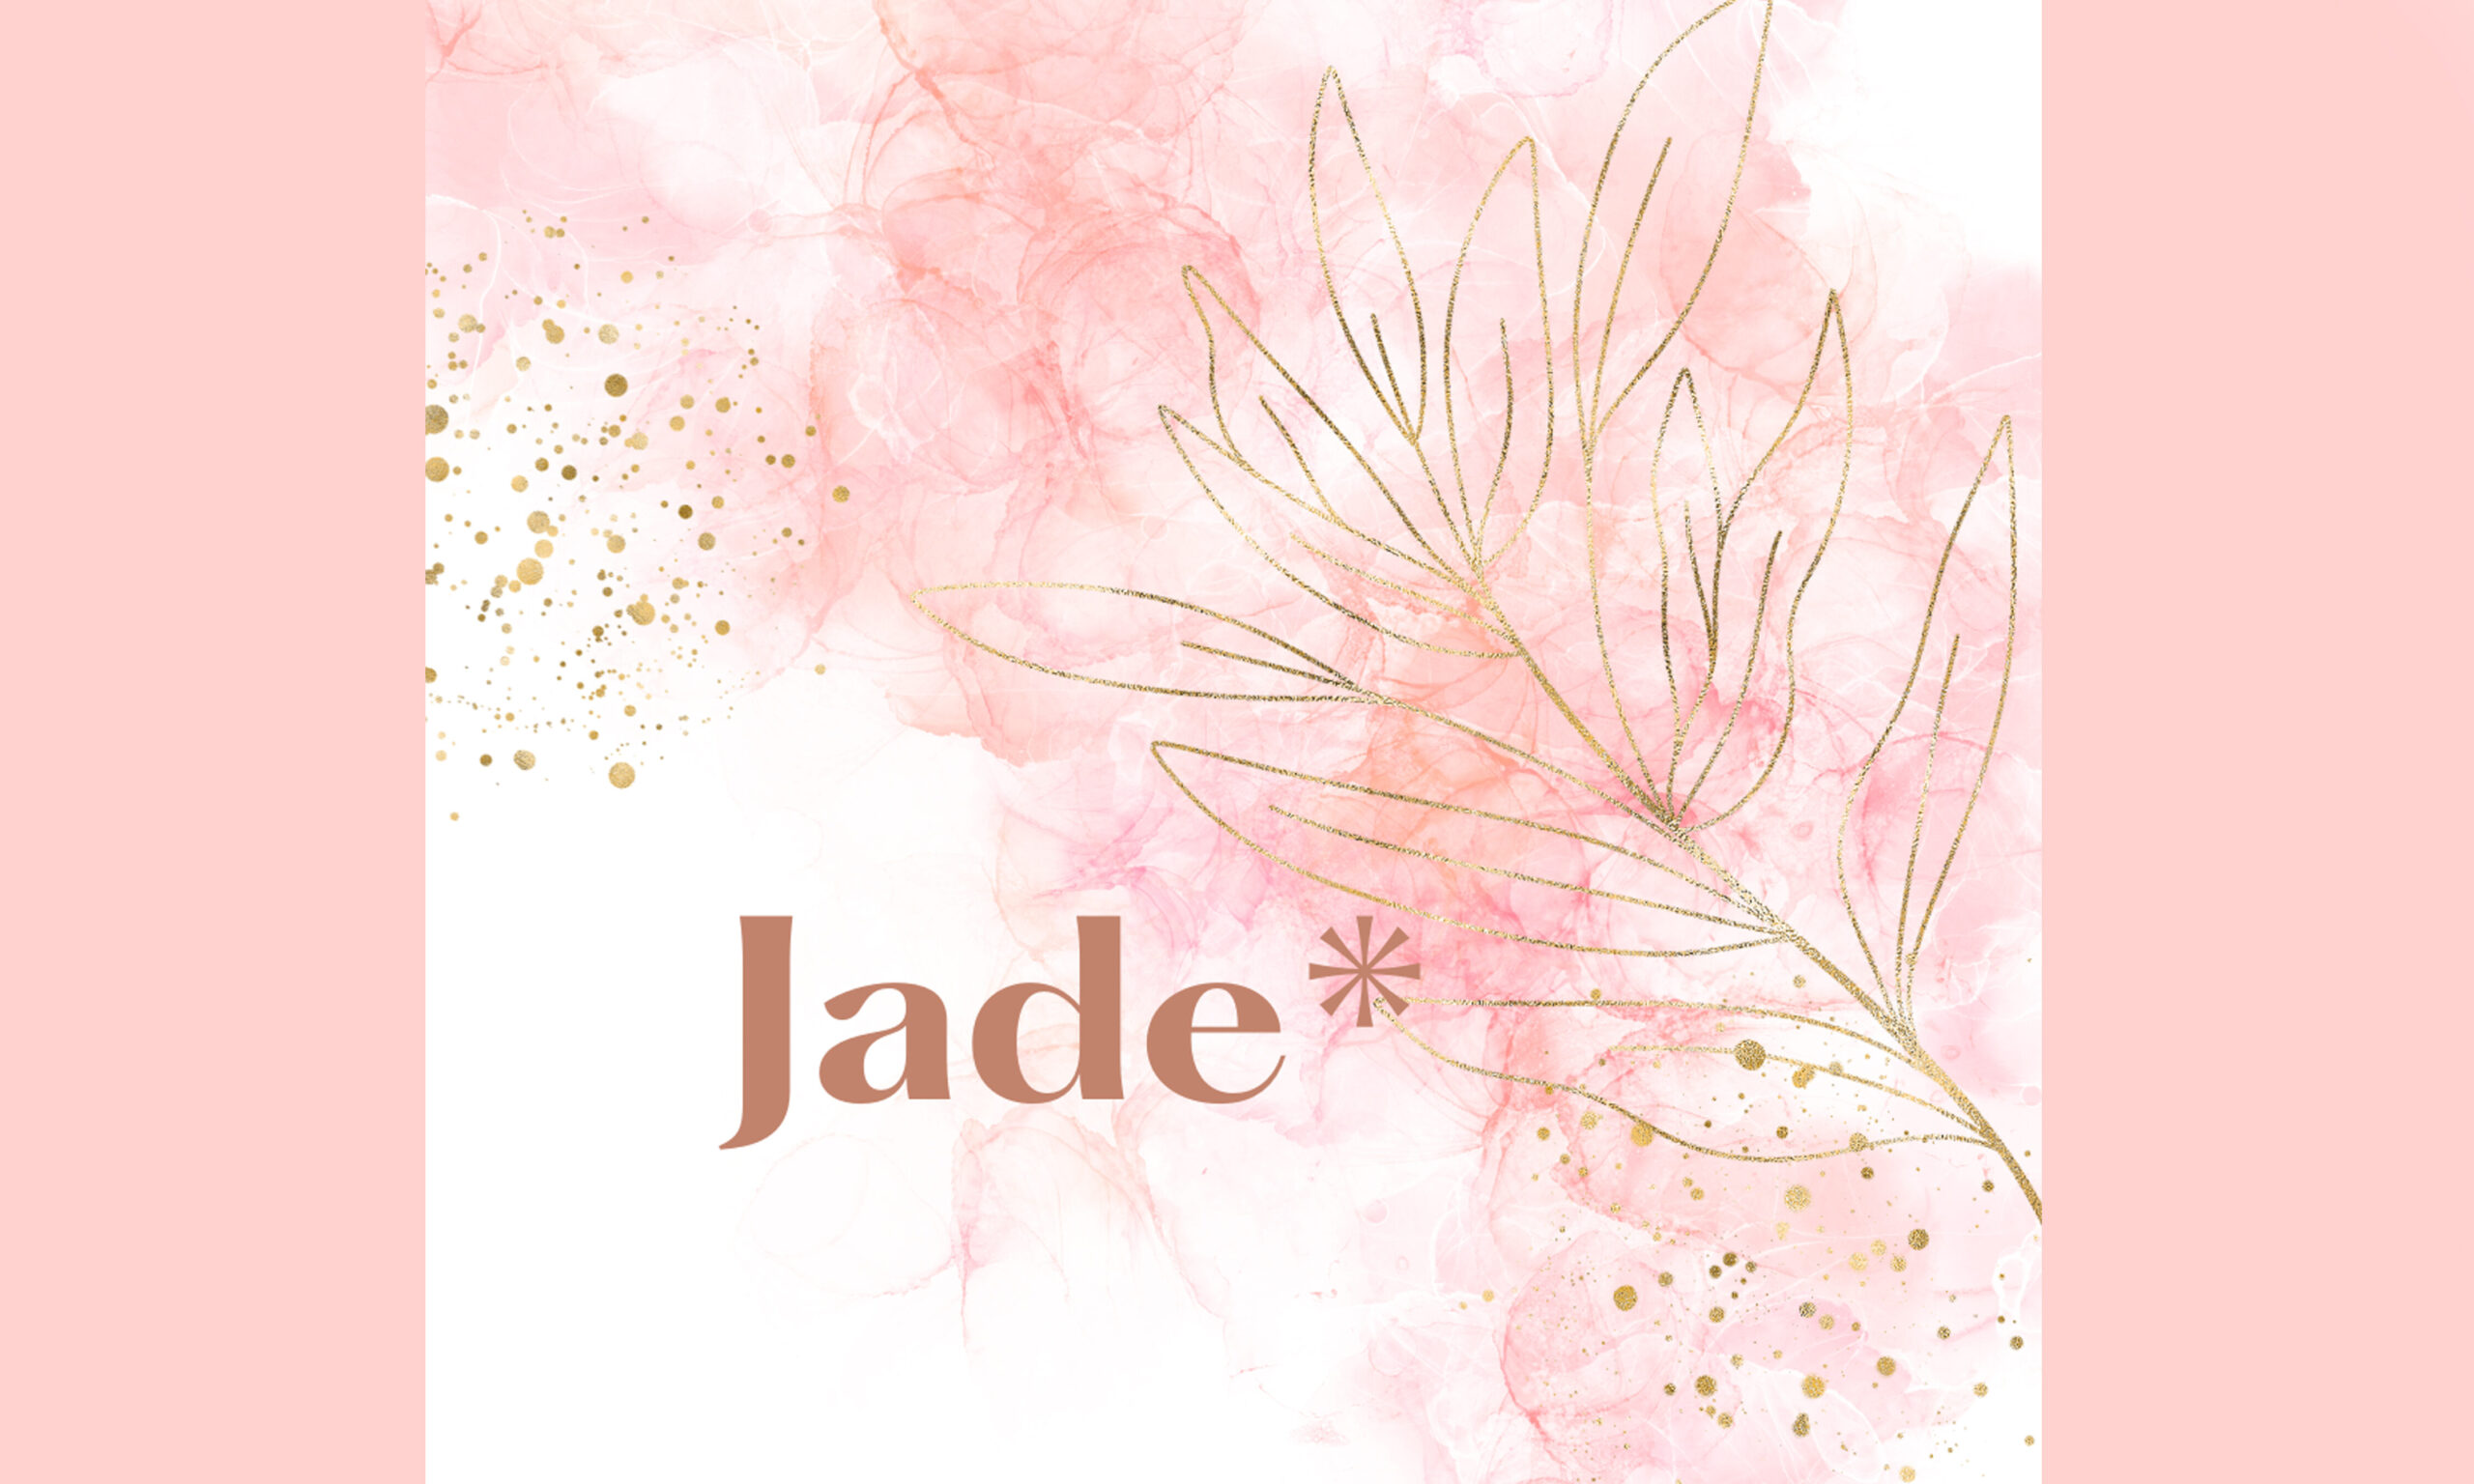 Jade*